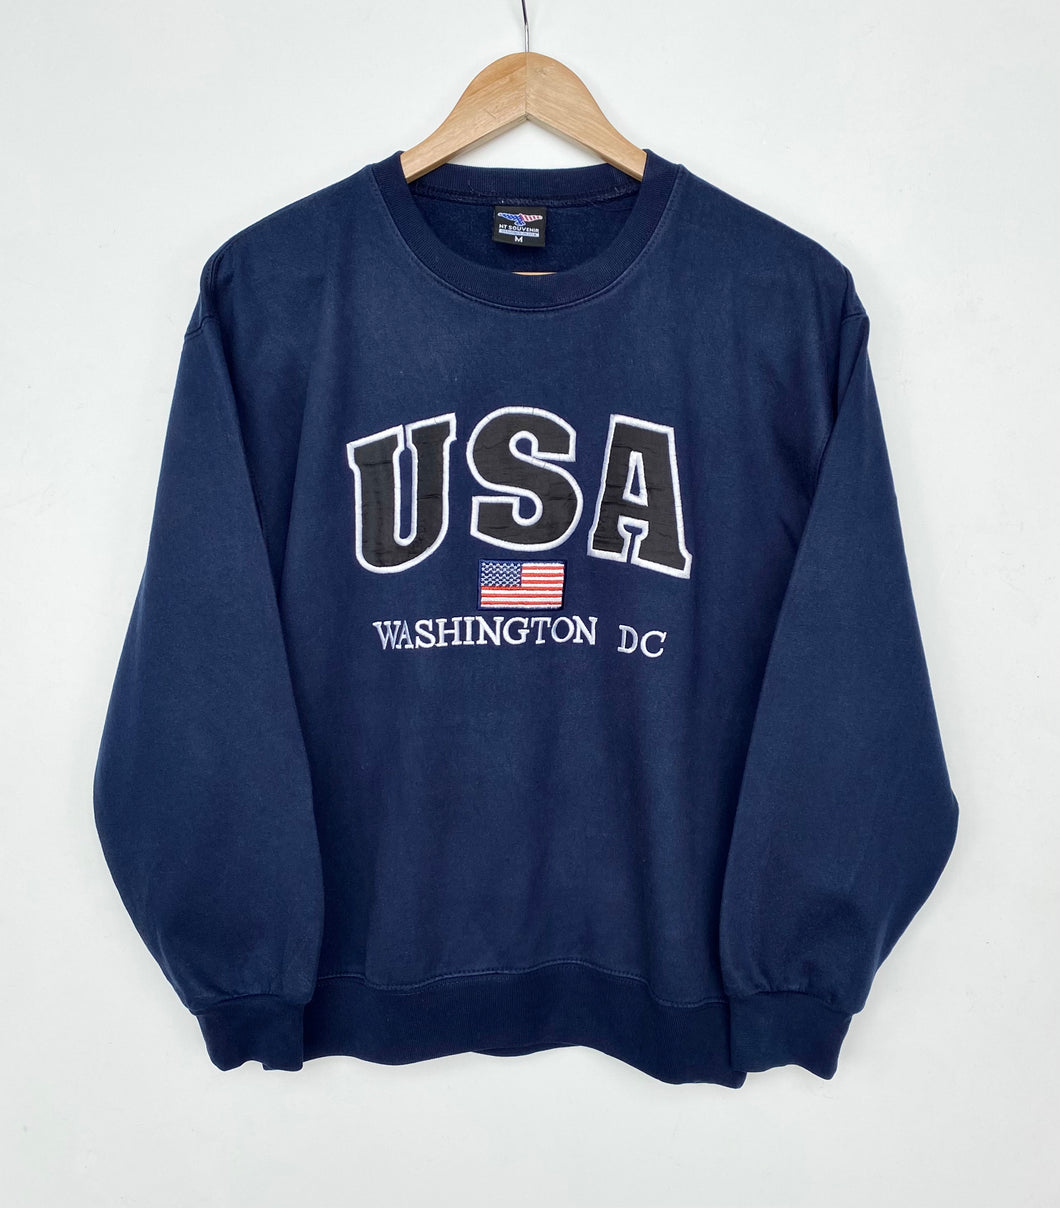 USA Washington DC Sweatshirt (XS)